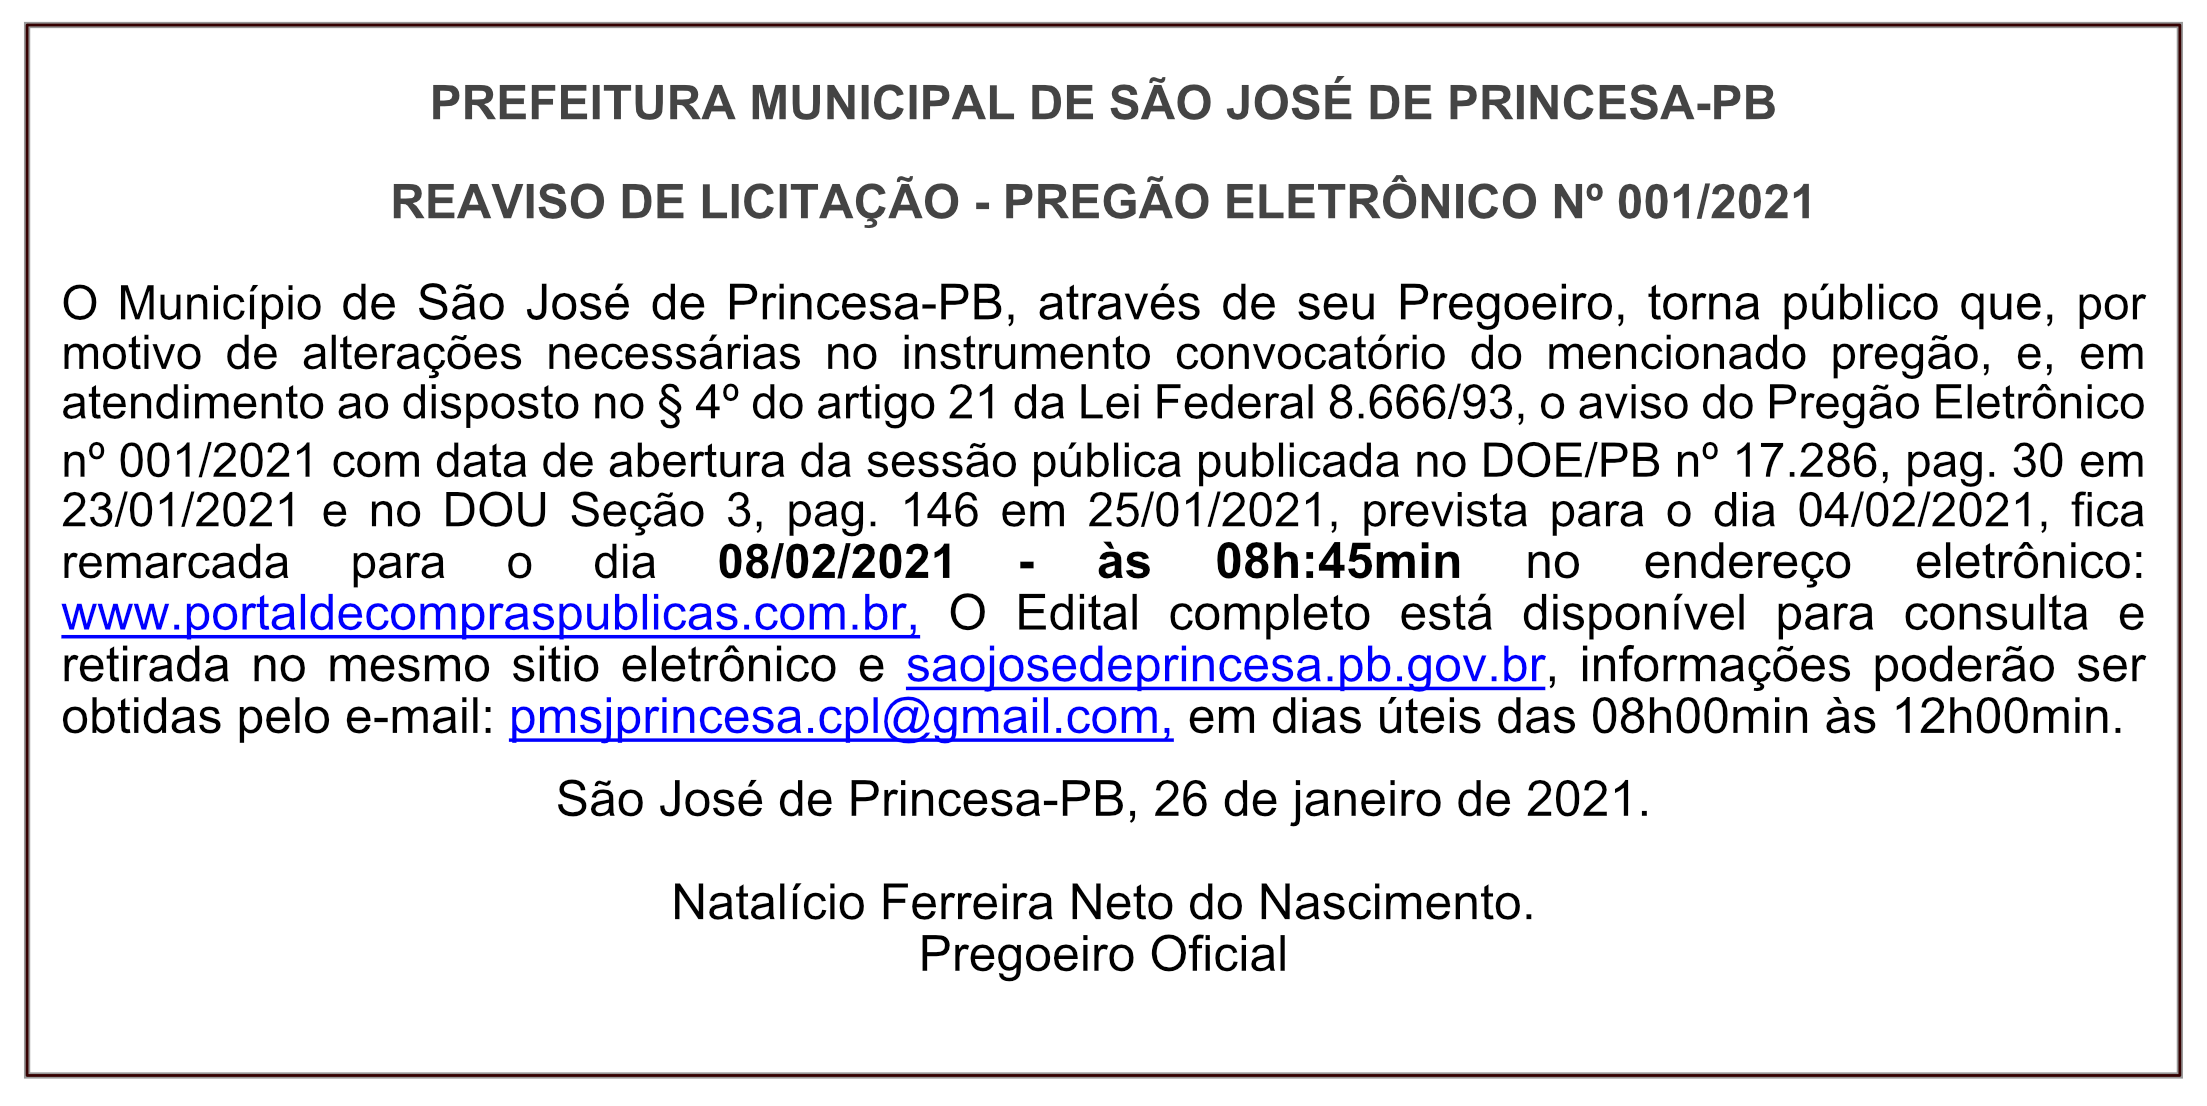 PREFEITURA MUNICIPAL DE SÃO JOSÉ DE PRINCESA – REAVISO DE LICITAÇÃO – PREGÃO ELETRÔNICO Nº 001/2021